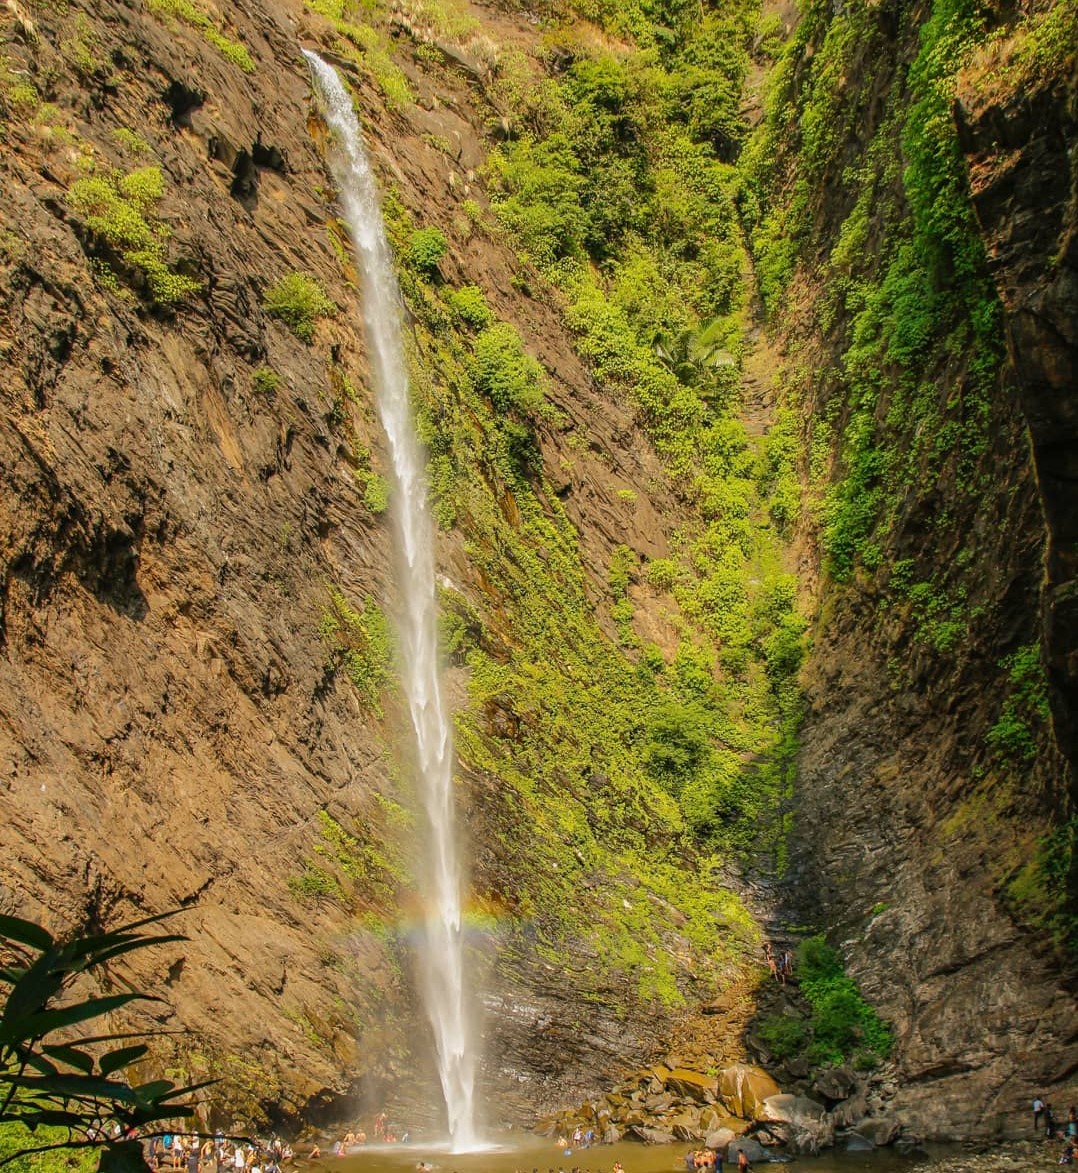 Koodlu Theertha Falls near Kundadri Hill